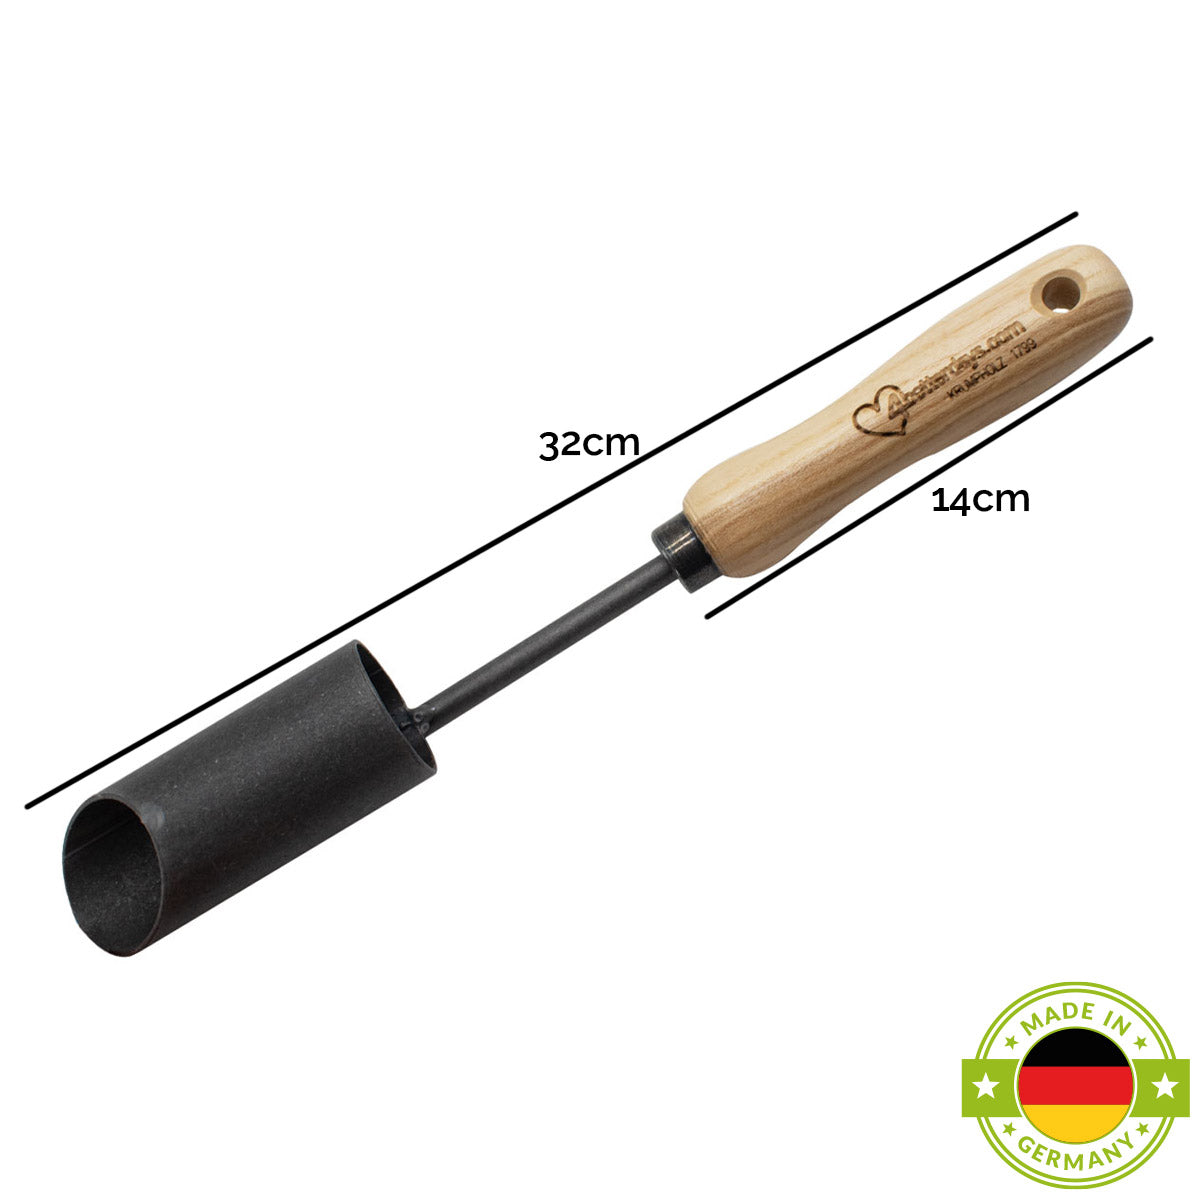 Zwiebelpflanzer | DM 48 mm | aus Schwedenstahl | mit 14 cm ergonomischem Eschengriff | handgeschmiedet in Deutschland